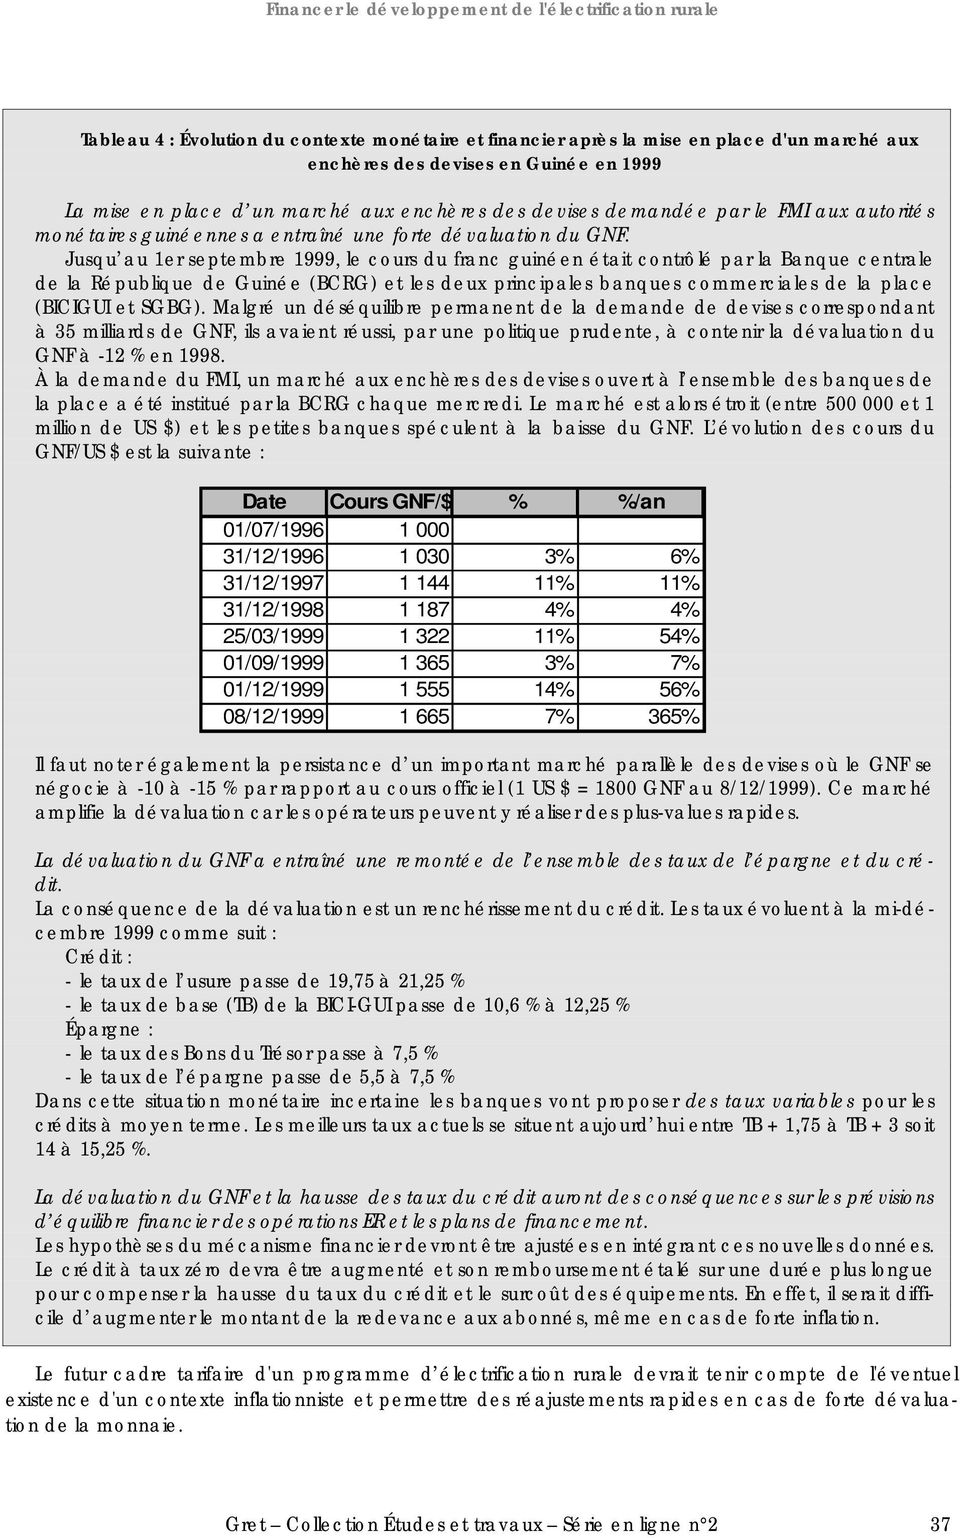 Jusqu au 1er septembre 1999, le cours du franc guinéen était contrôlé par la Banque centrale de la République de Guinée (BCRG) et les deux principales banques commerciales de la place (BICIGUI et